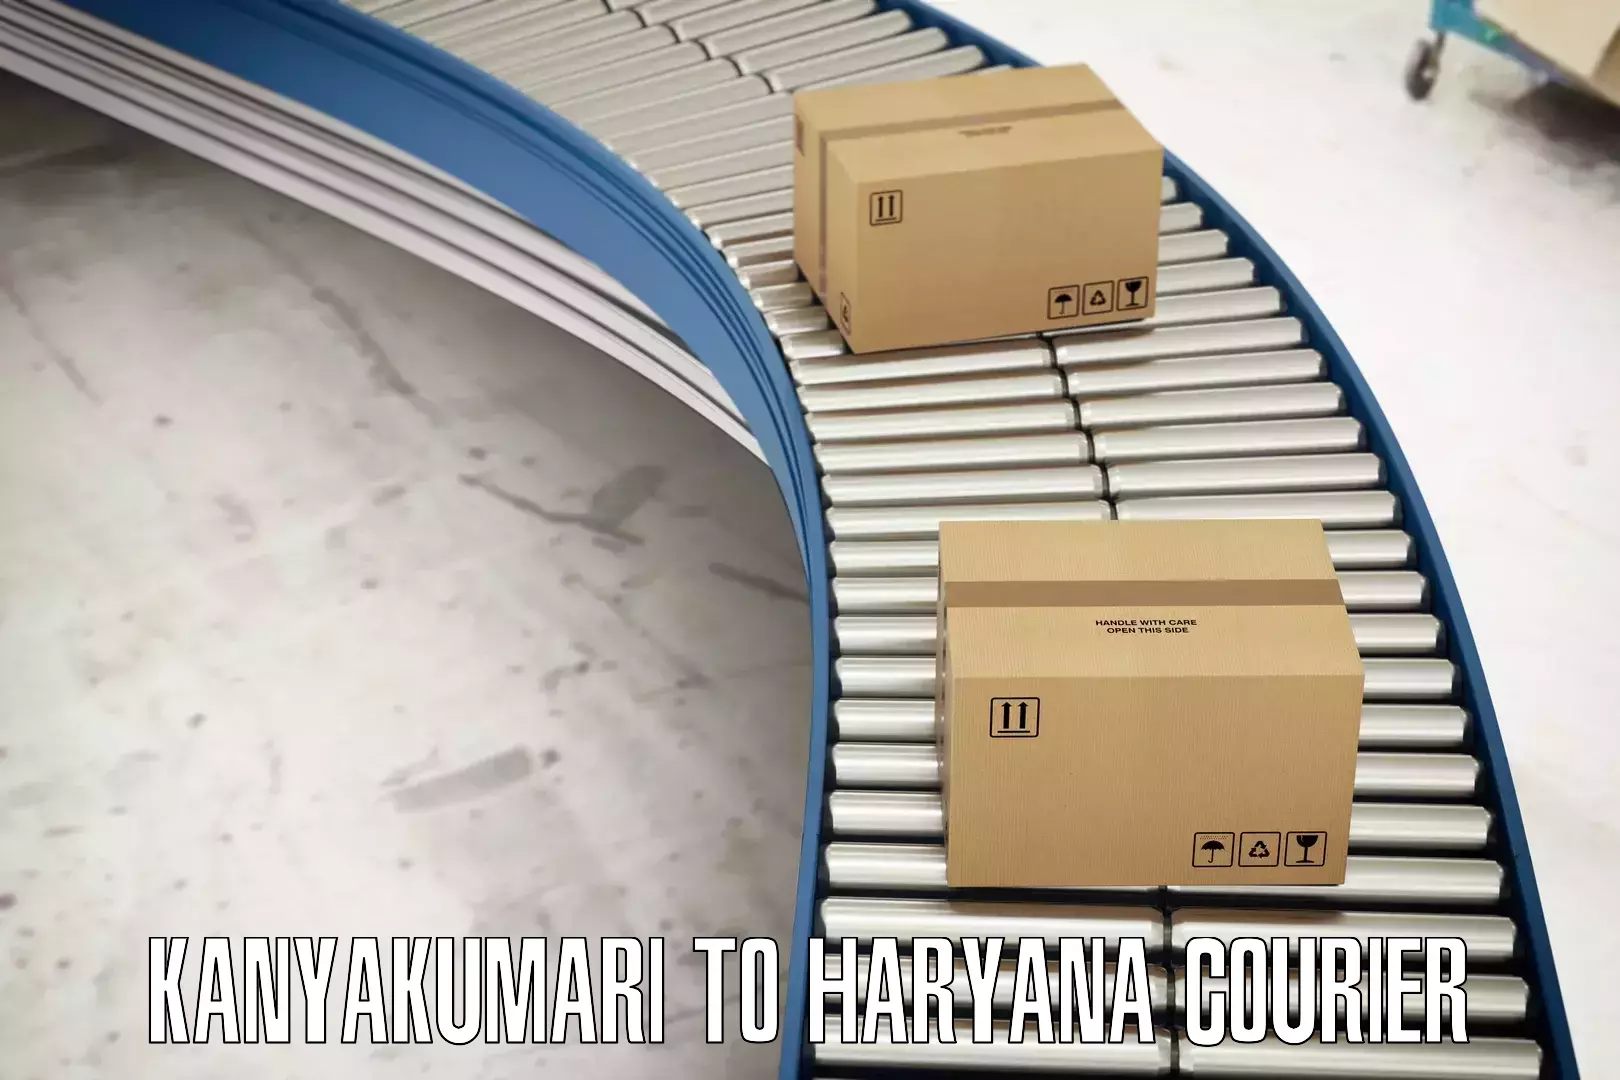 Small business couriers Kanyakumari to Haryana